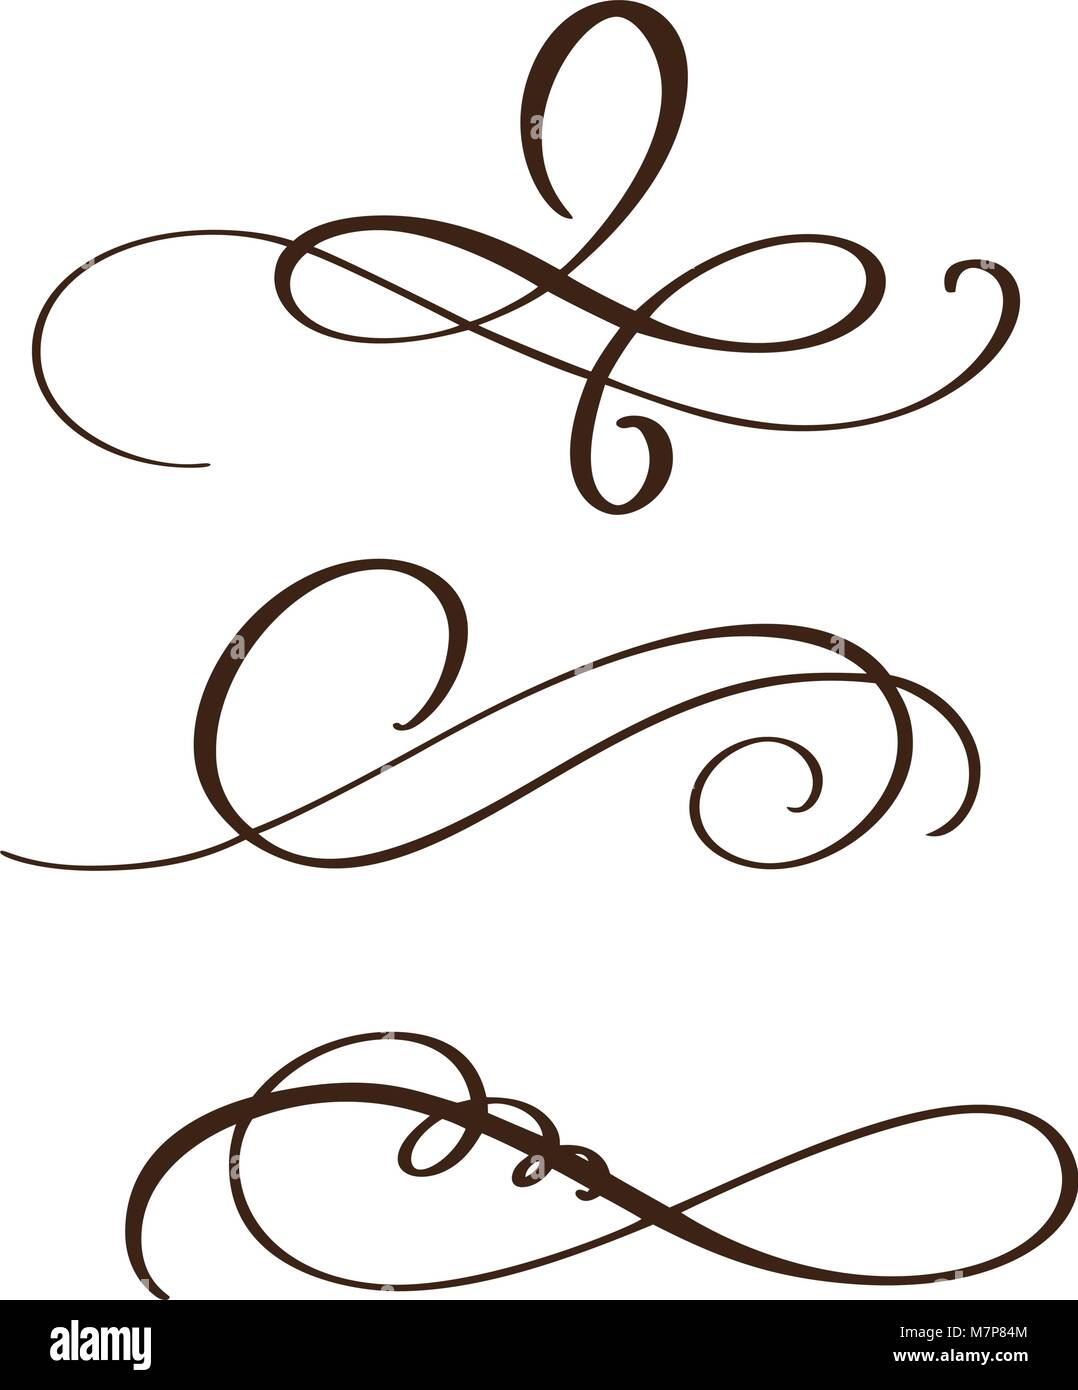 Disegnato a mano separatore fioriscono gli elementi di calligrafia. Illustrazione Vettoriale Illustrazione Vettoriale